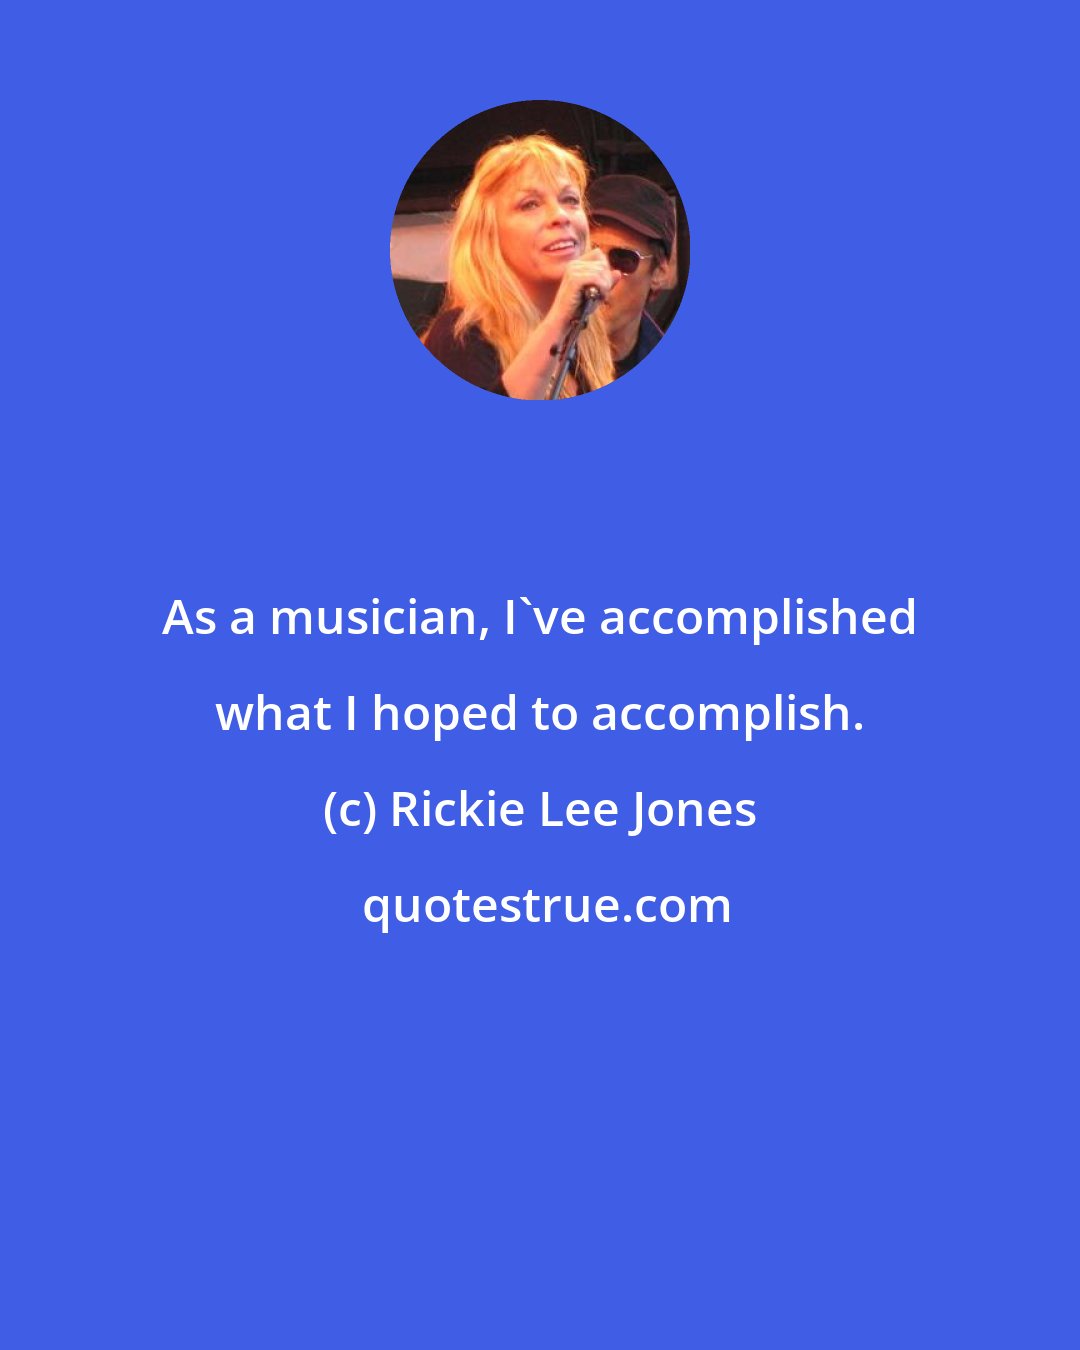 Rickie Lee Jones: As a musician, I've accomplished what I hoped to accomplish.